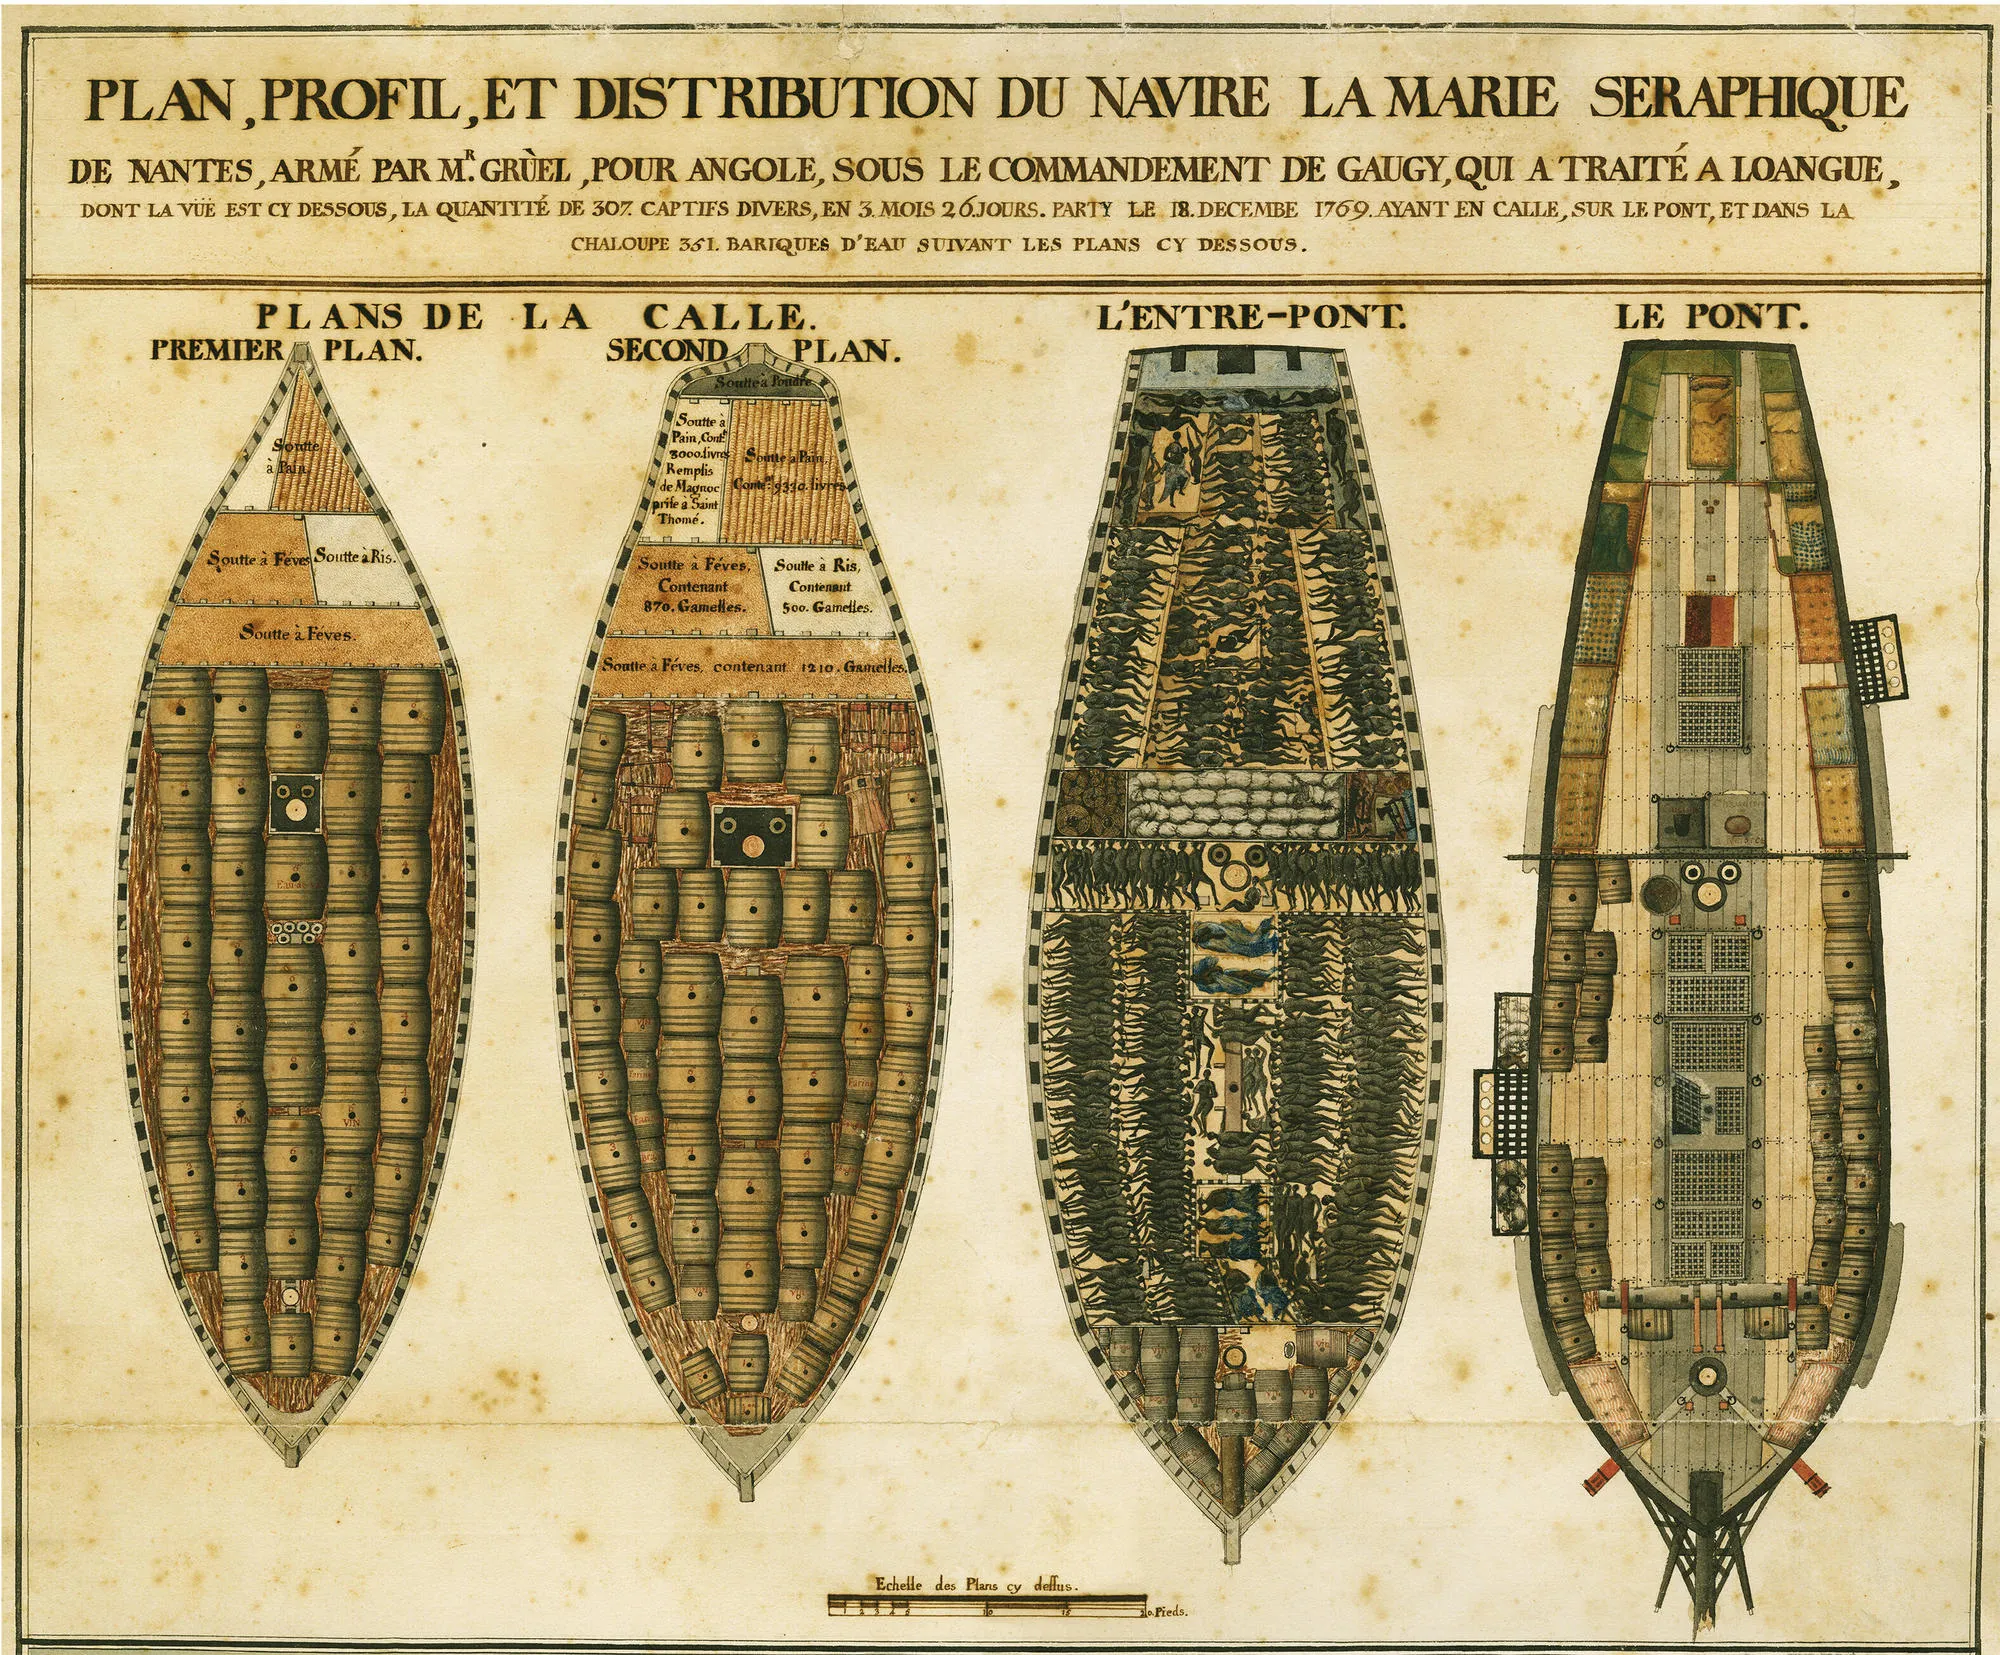 Plan, profil et distribution du navire négrier La Marie Séraphique 1770